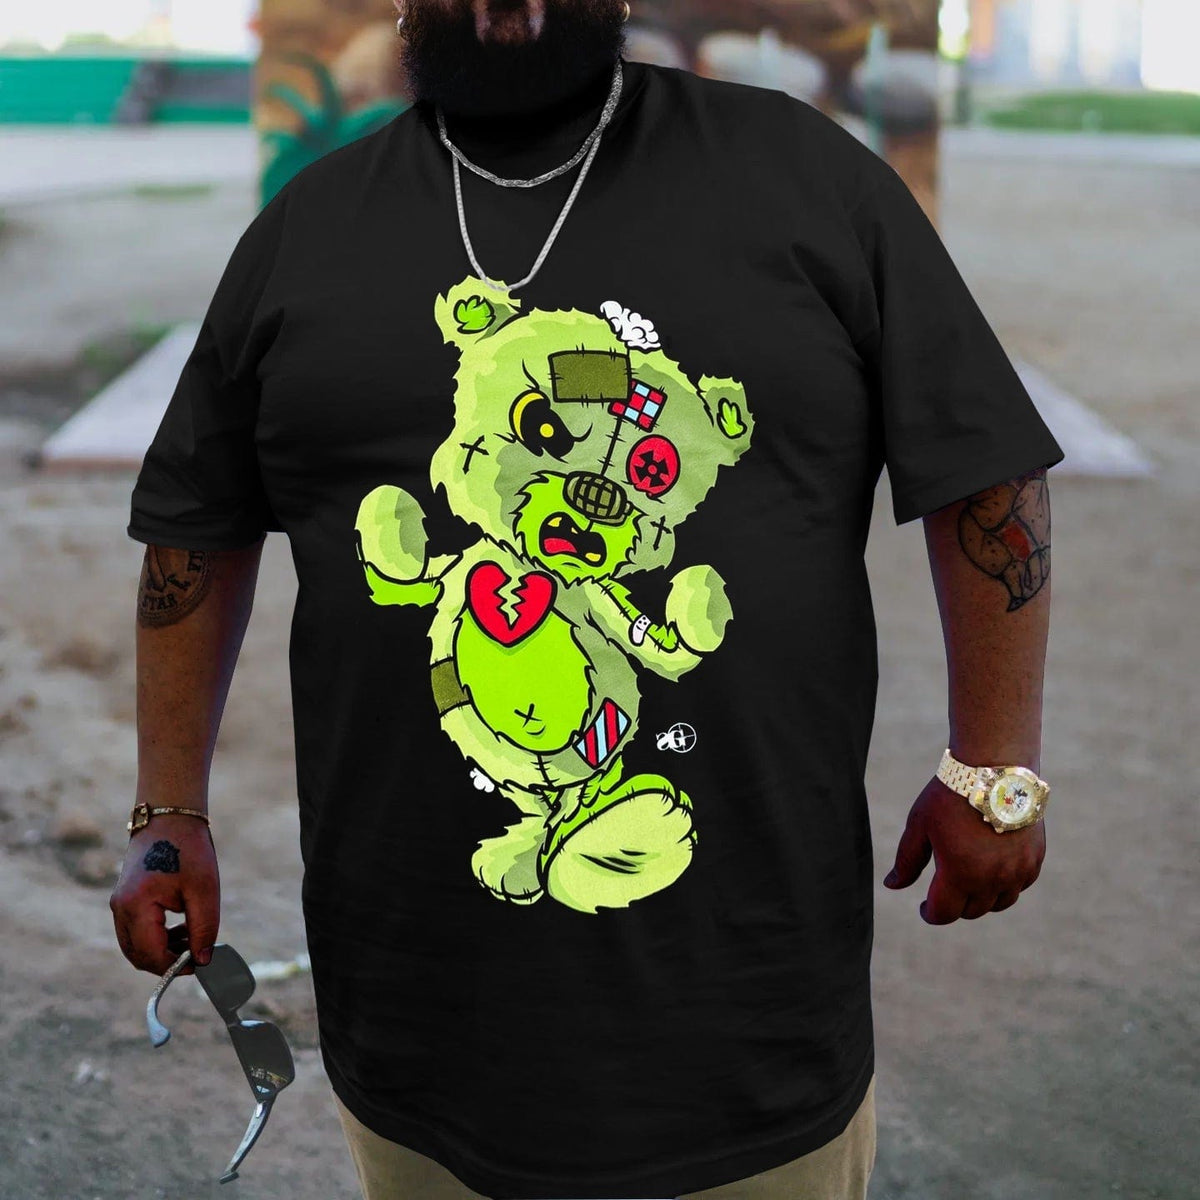 Bear's Heart Broken, Creative Men Plus Size Oversize T-shirt for Big & Tall Man